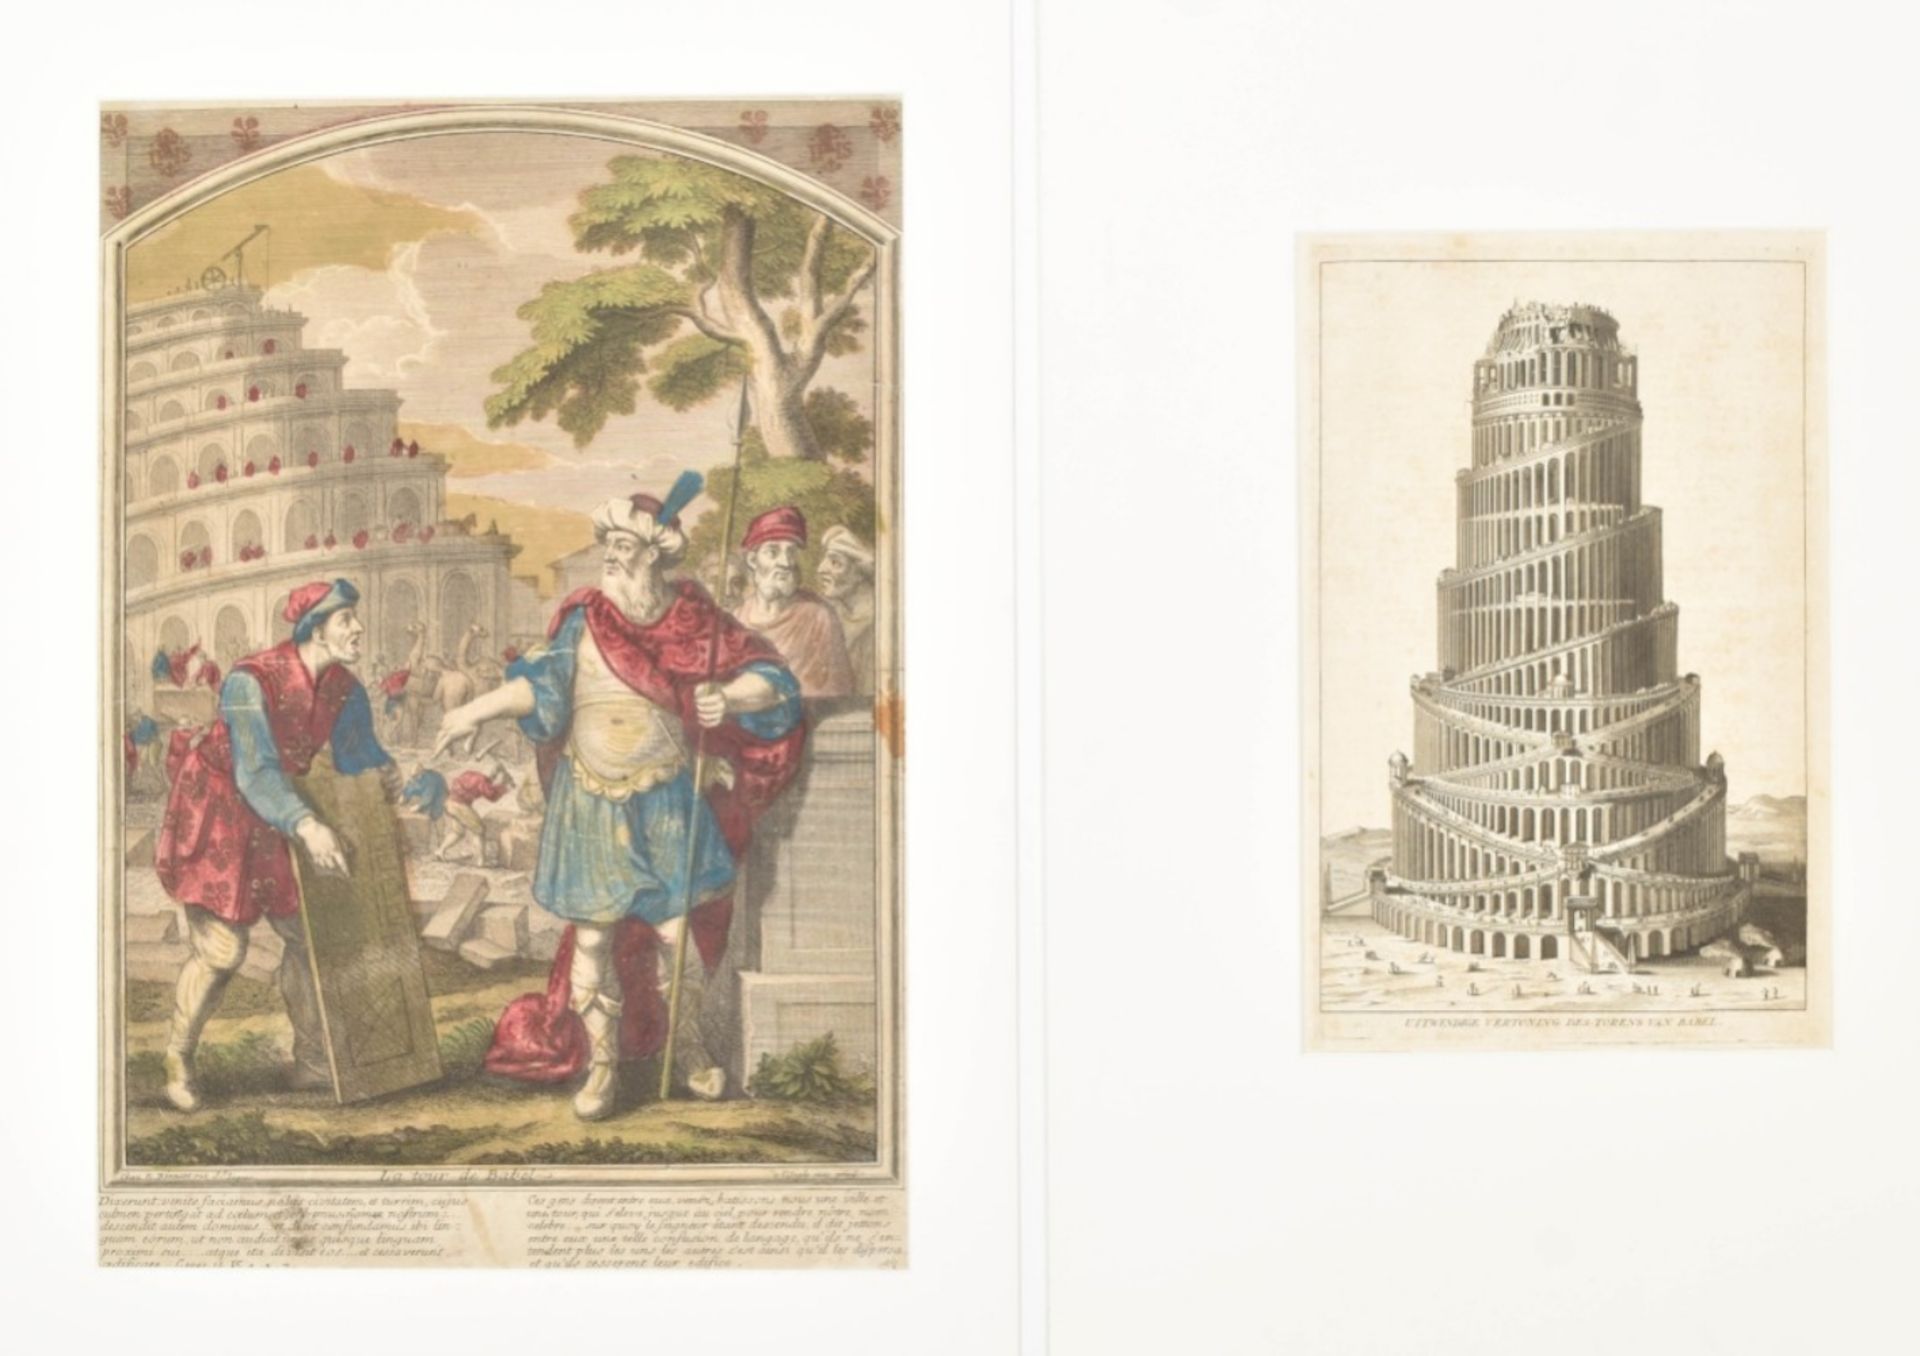 Two prints depicting the Tower of Babel: "La tour de Babel"